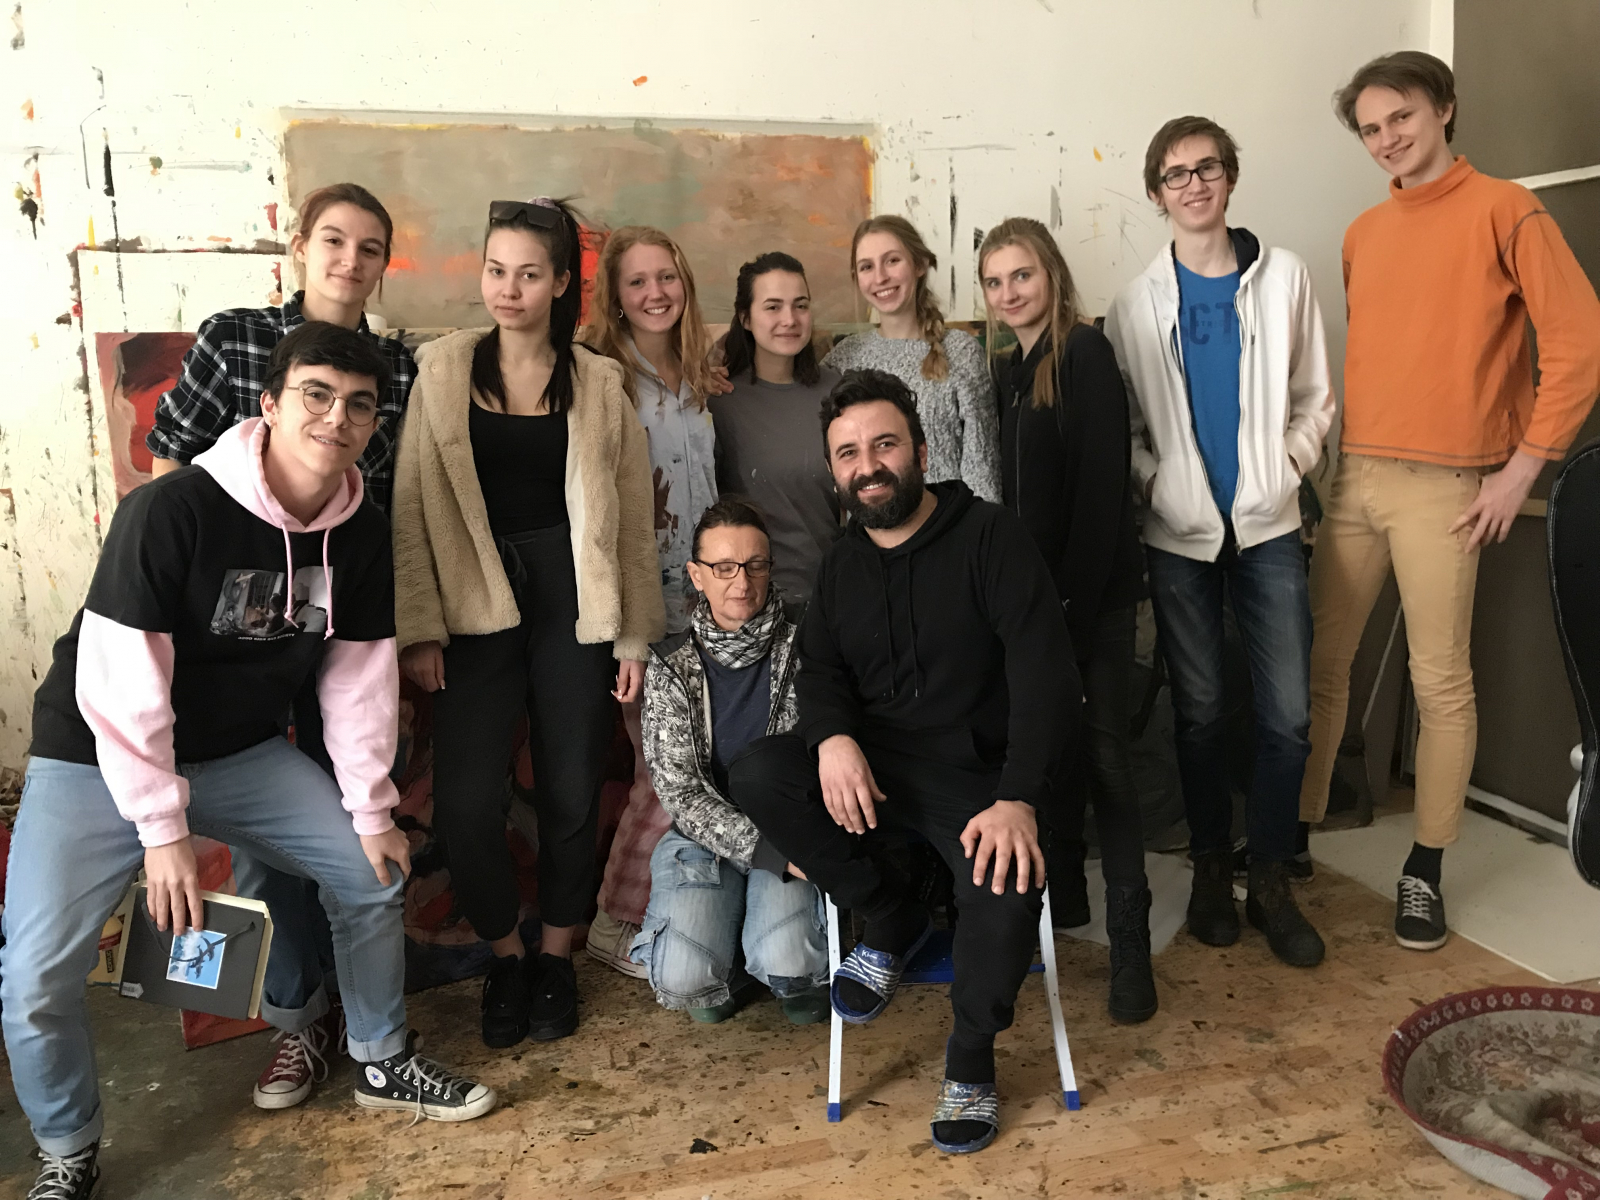 Workshop Maturaklasse, Leinwand bauen & Aktionsmalen, Führung beim Künstler Adel Dauood